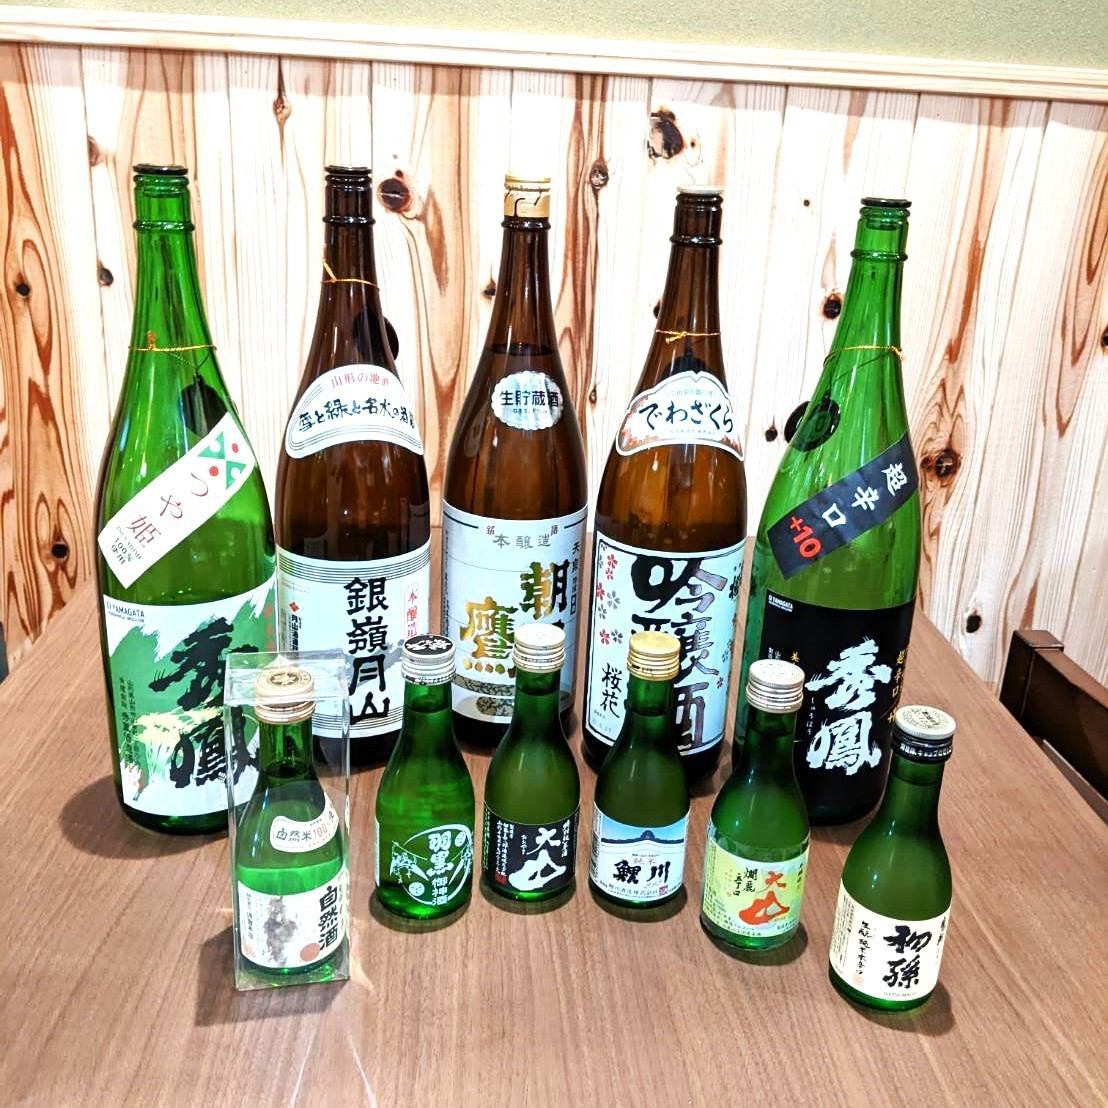 這裡有來自日本各地的各種當地酒！如果您有興趣，請聯繫店長。